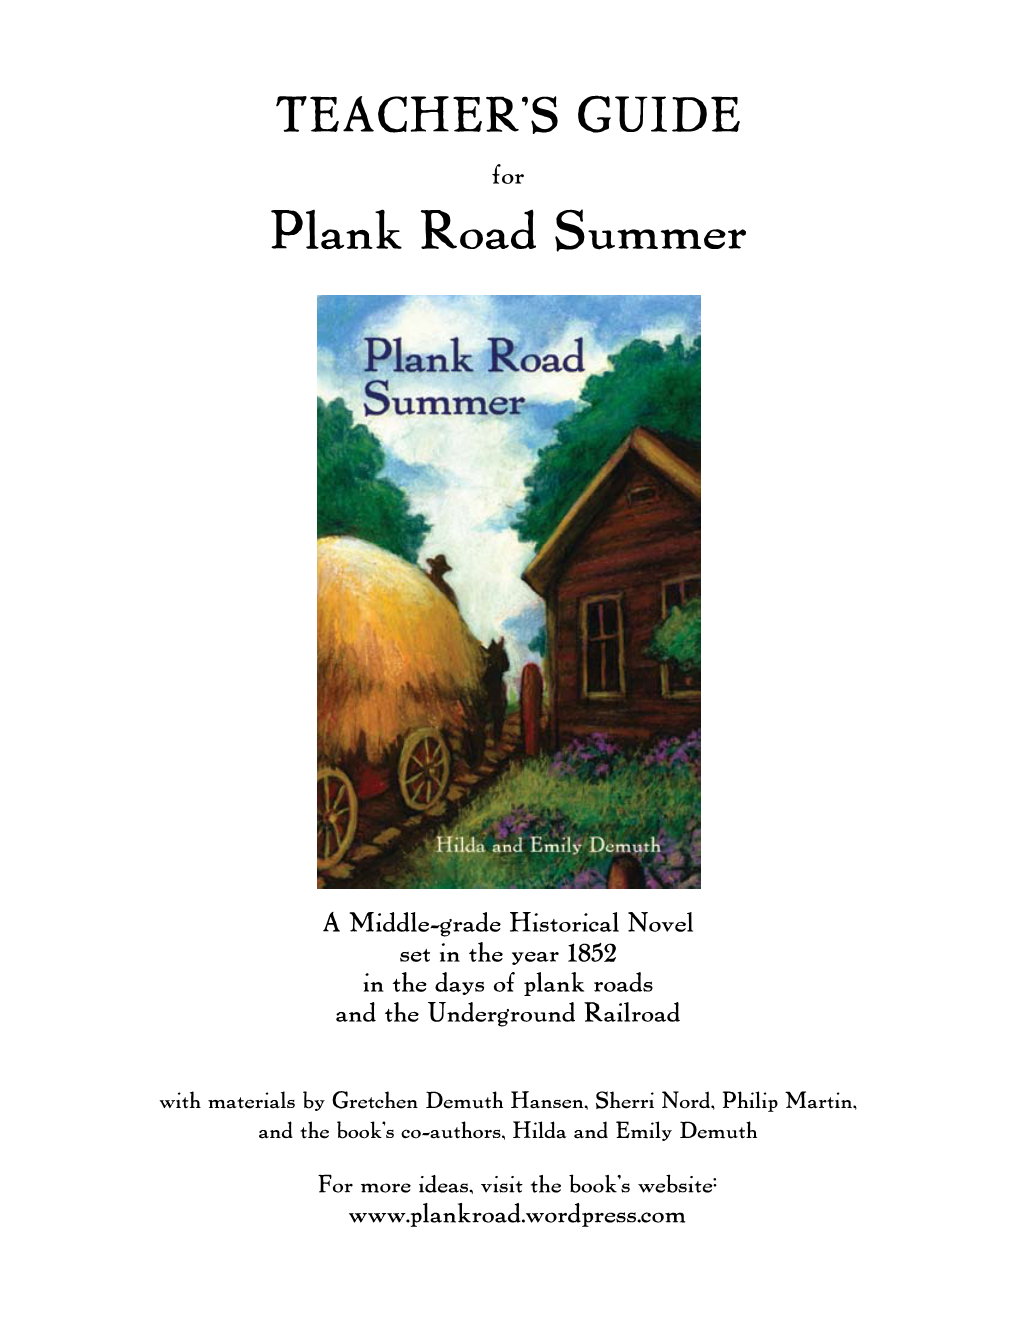 Plank Road Summer